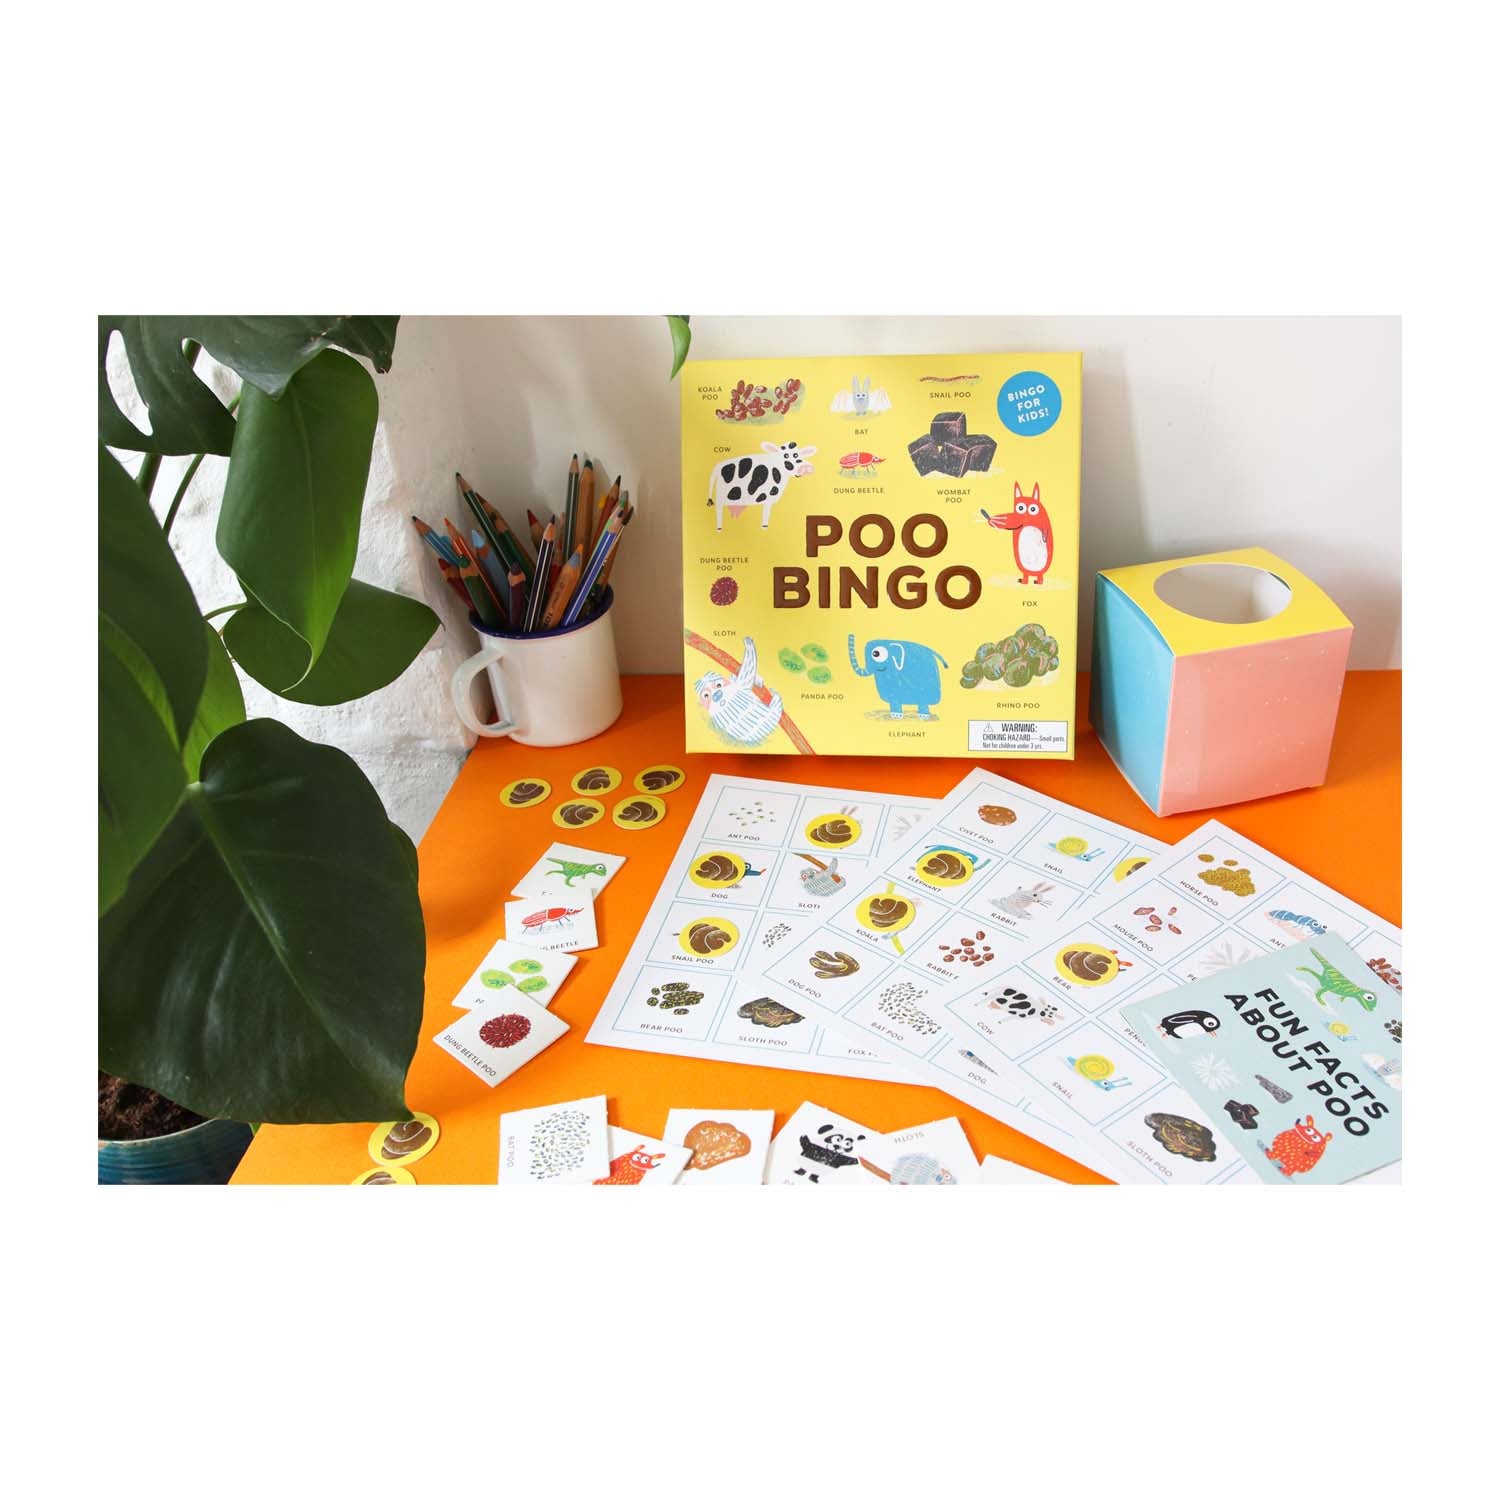 Poo bingo board game	